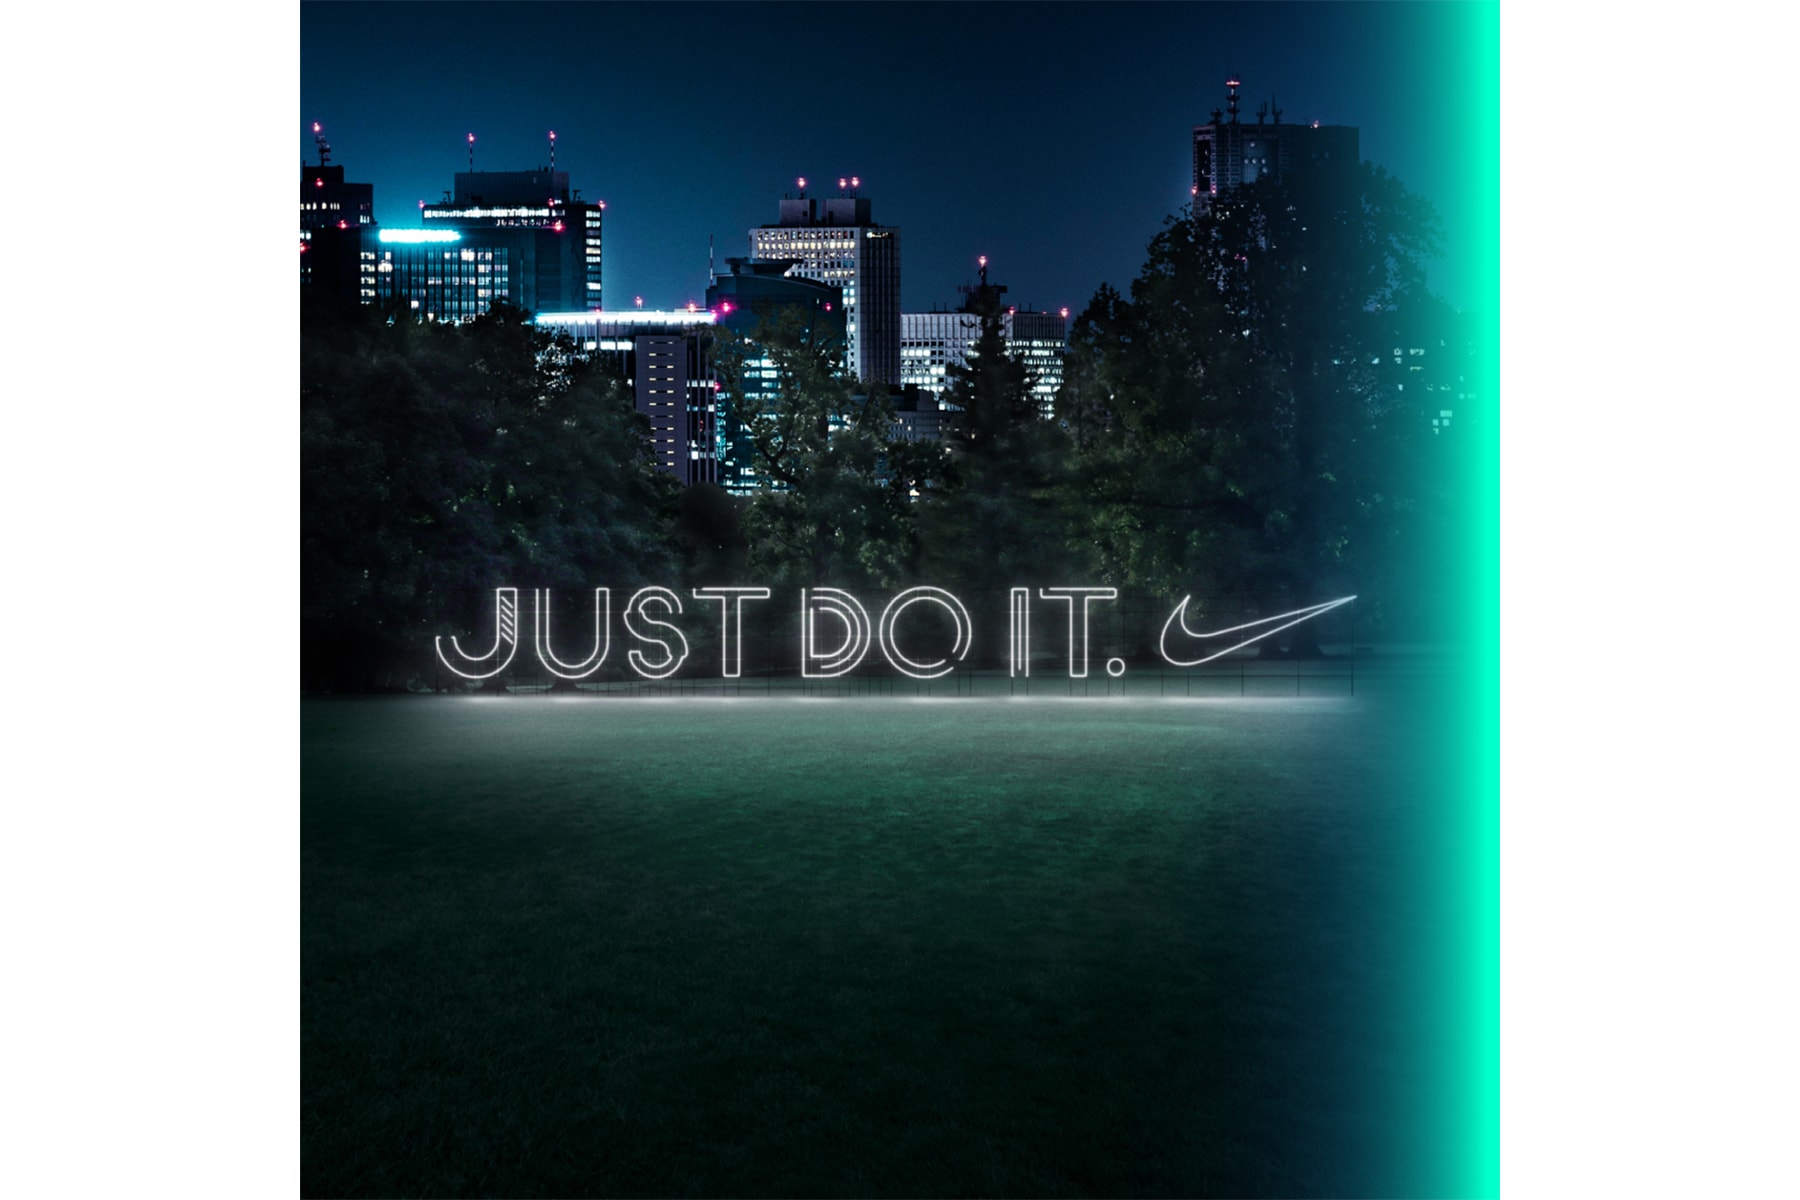 閉園の新宿御苑にて Nike が一夜限りのスペシャルなスポーツイベントを開催 ナイキ HYPEBEAST ハイプビースト